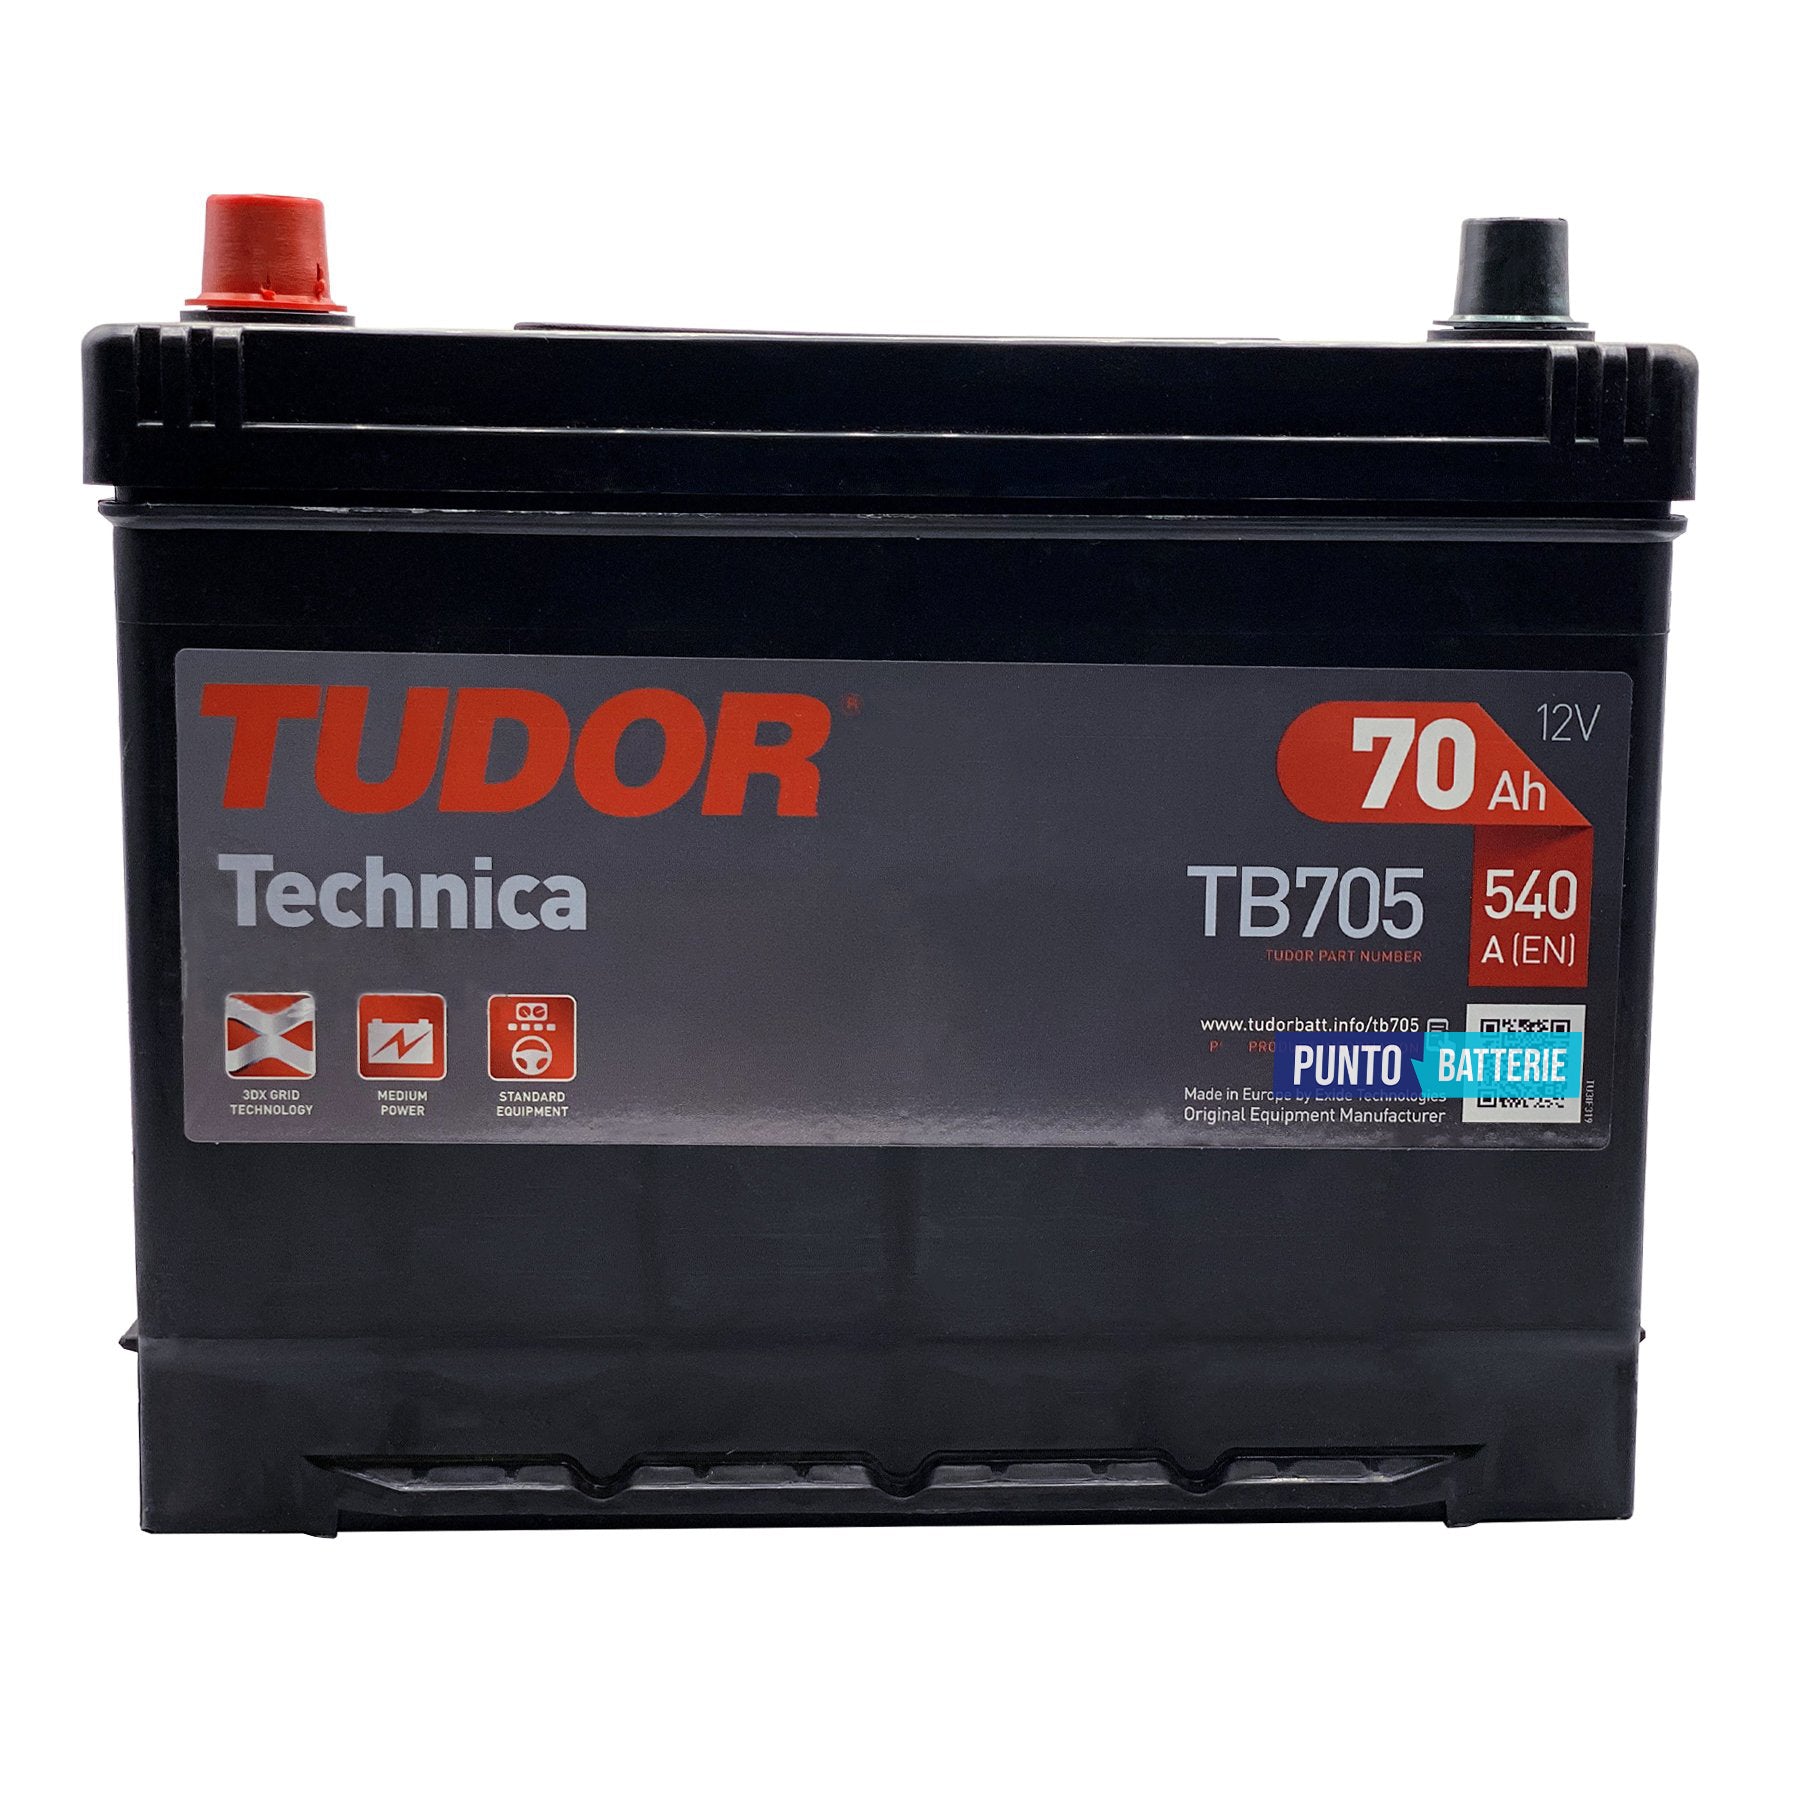 Batteria Tudor 70Ah, 12V, 540A, 270x173x222mm